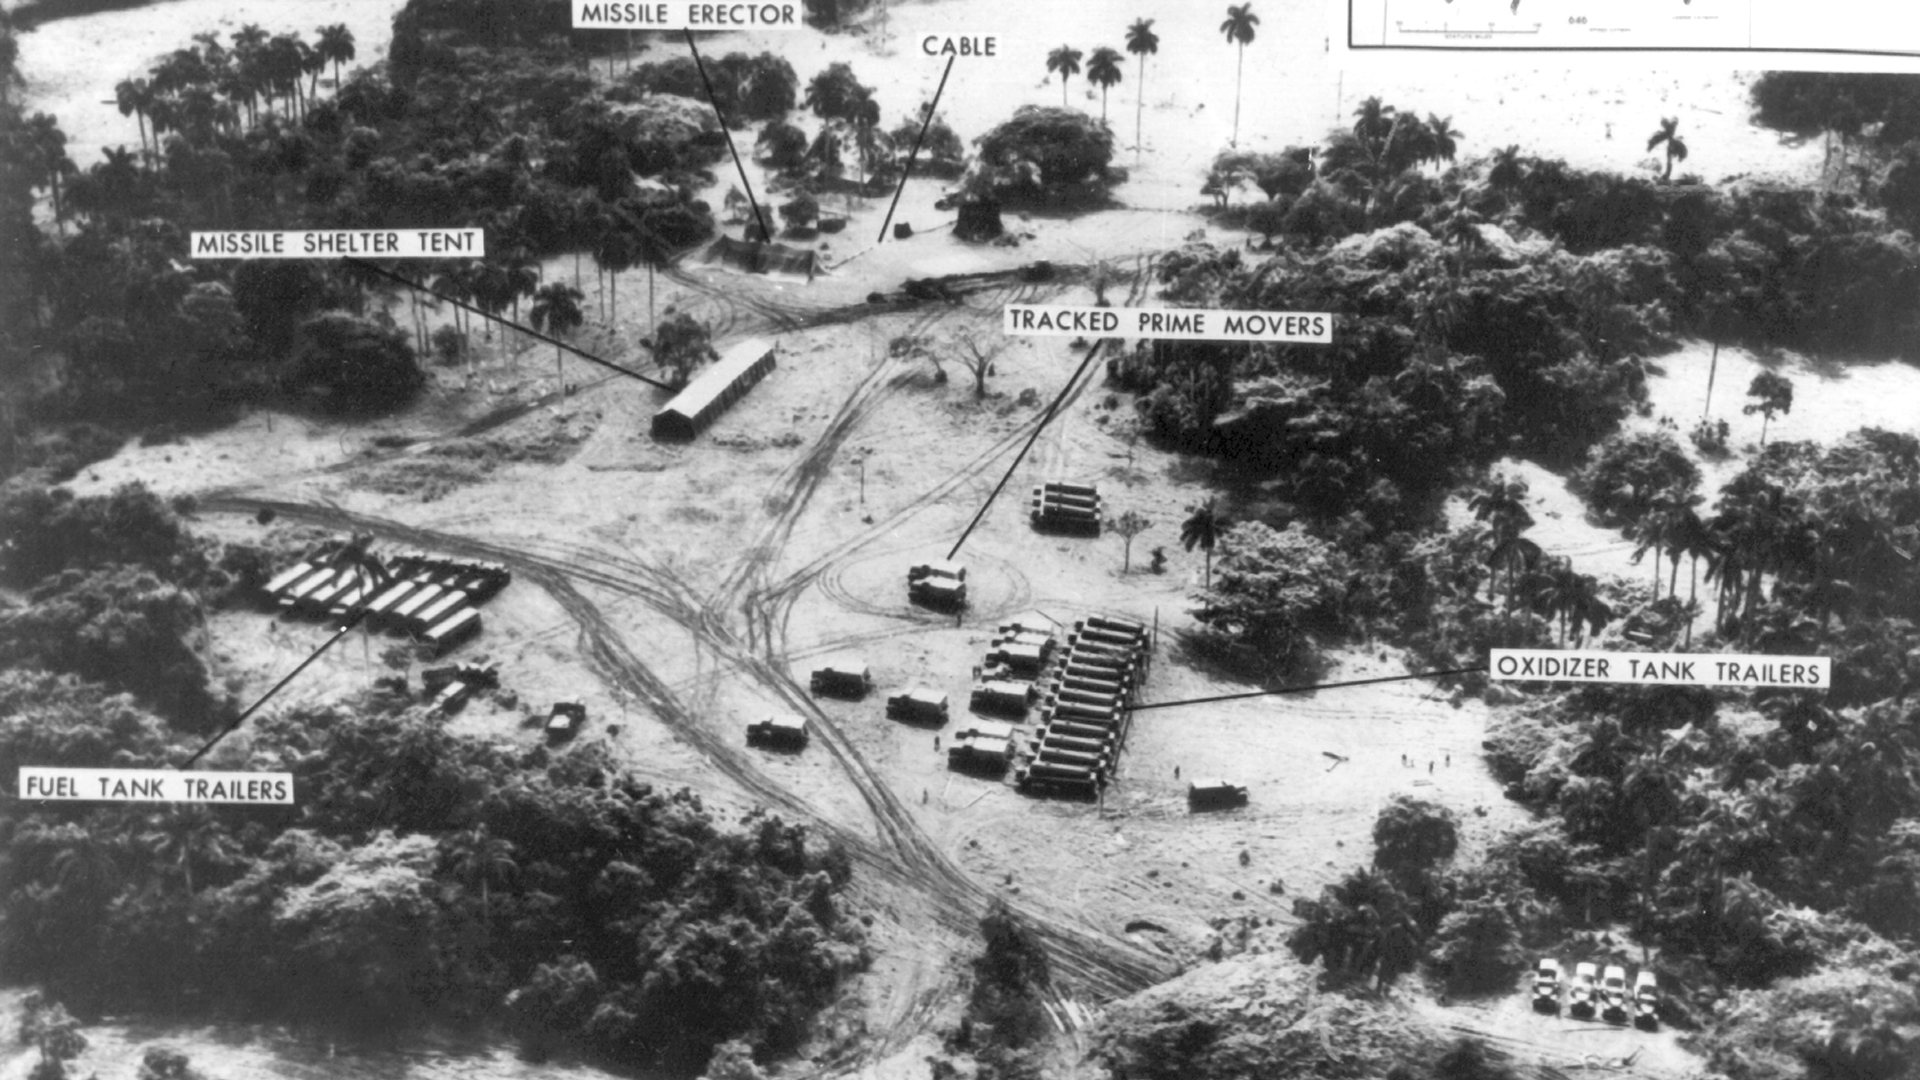 Eine Luftaufnahme zeigt sowjetische Raketenabschussrampen, Raketentranporter und Tanklager auf Kuba im Oktober 1962. | picture alliance / dpa